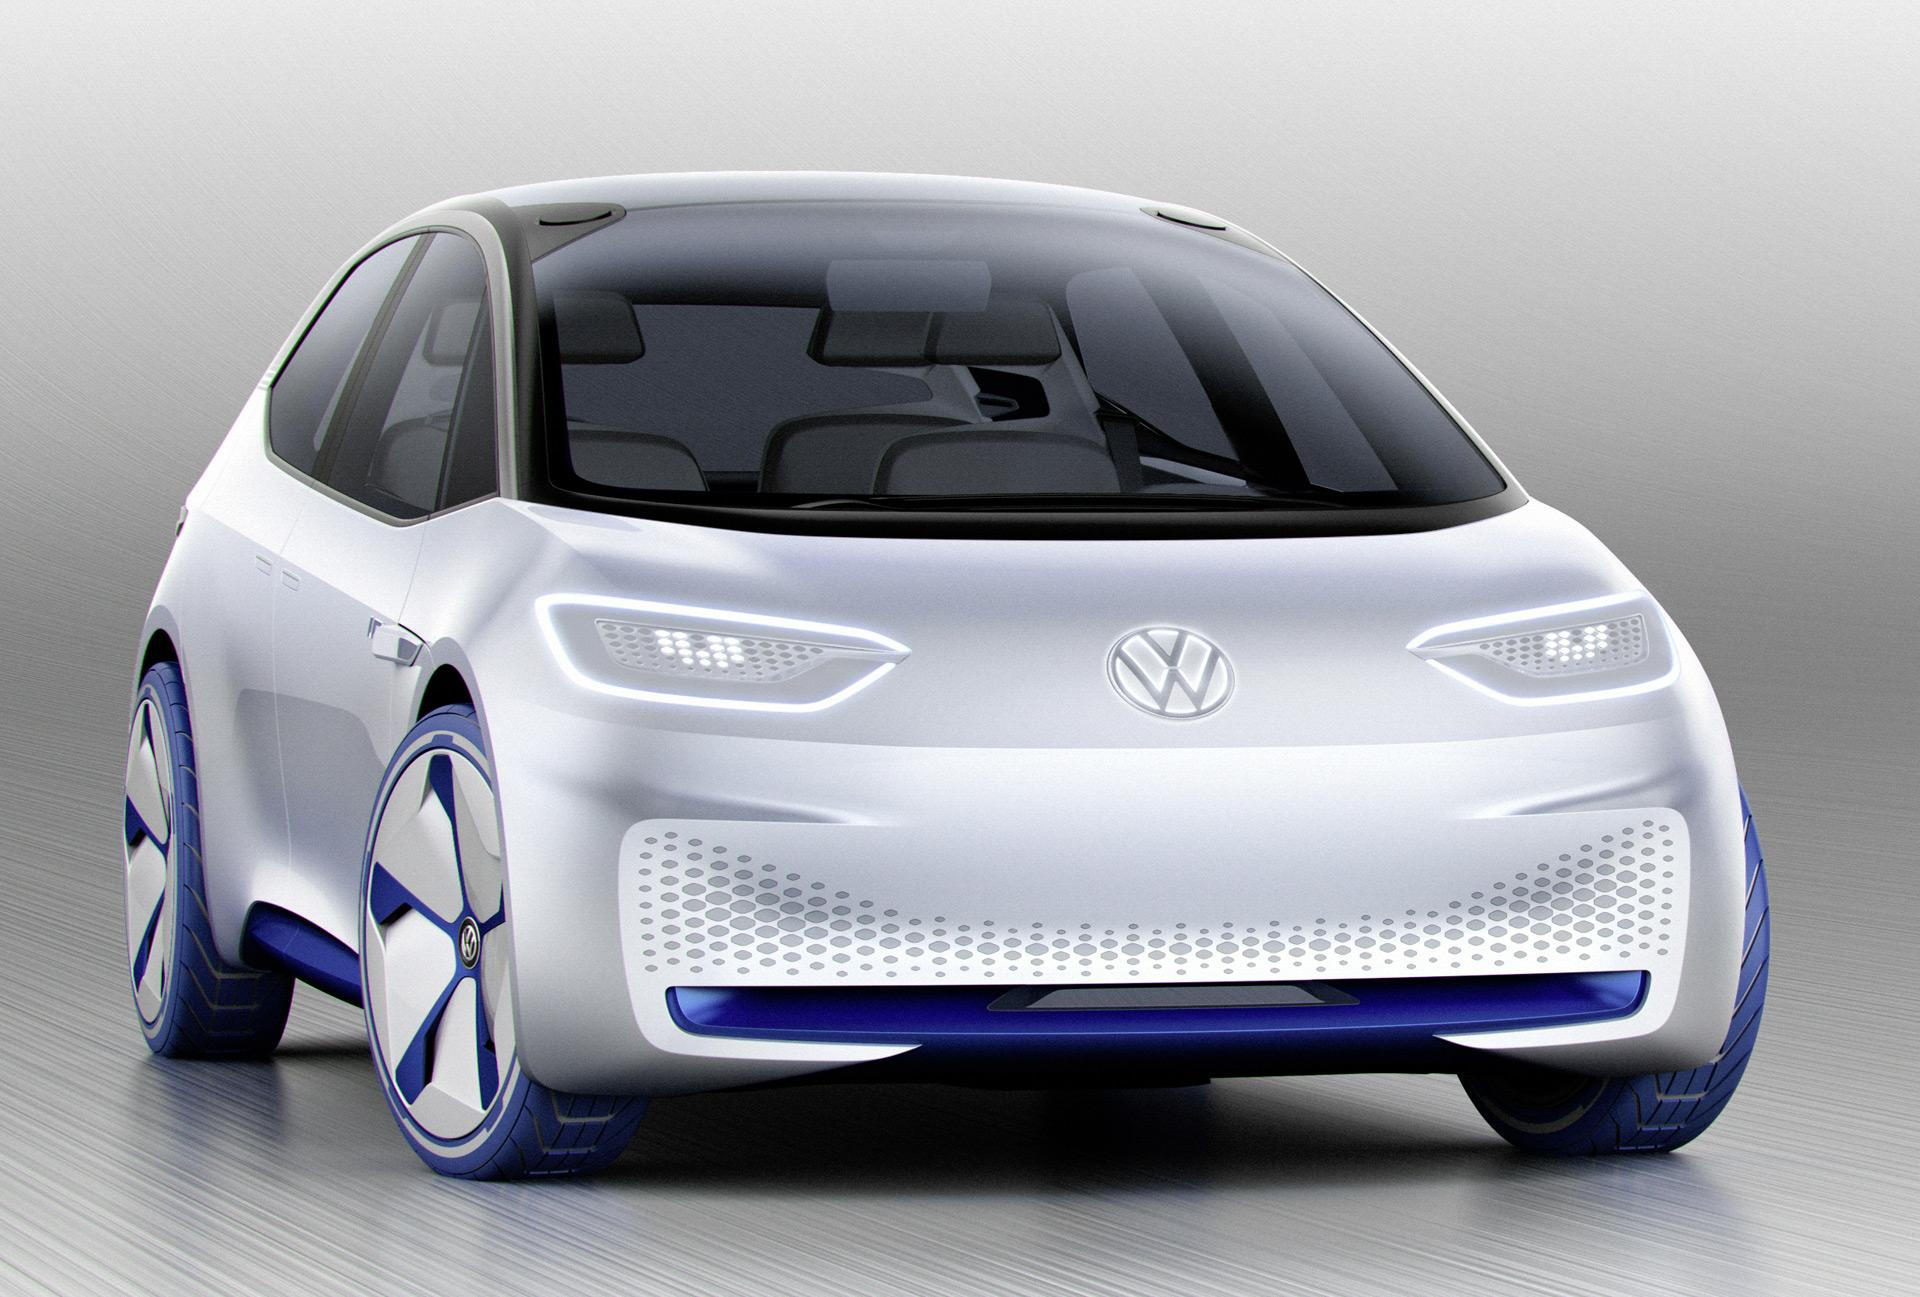 Nový elektromobil s označením I.D. od koncernu Volkswagen